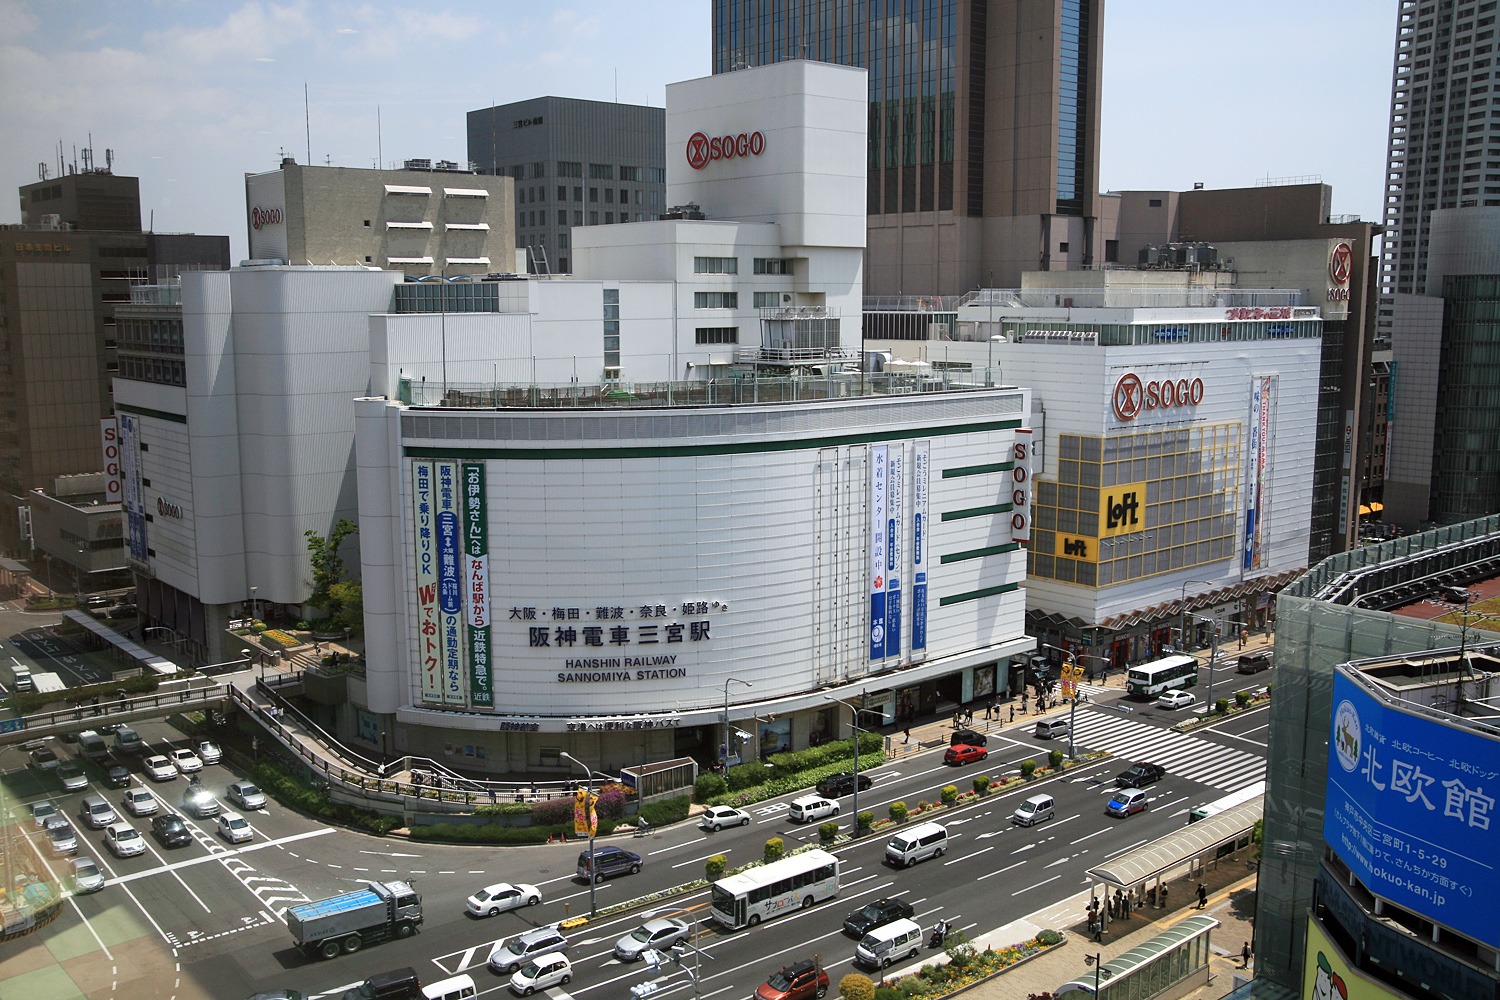 神戸三宮駅周辺の安い駐車場 最大料金が800円の駐車場も オススメの安い駐車場を紹介するサイト オトパ